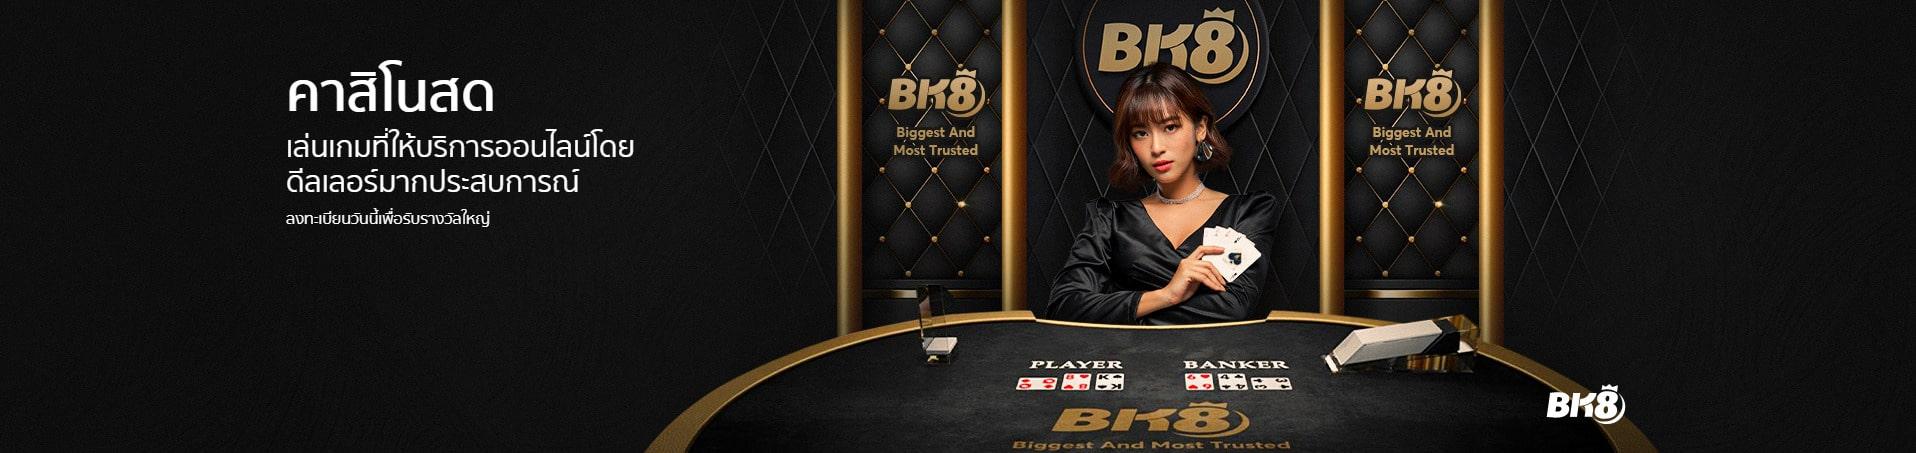 bk8 casino คาสิโนออนไลน์เว็บตรง